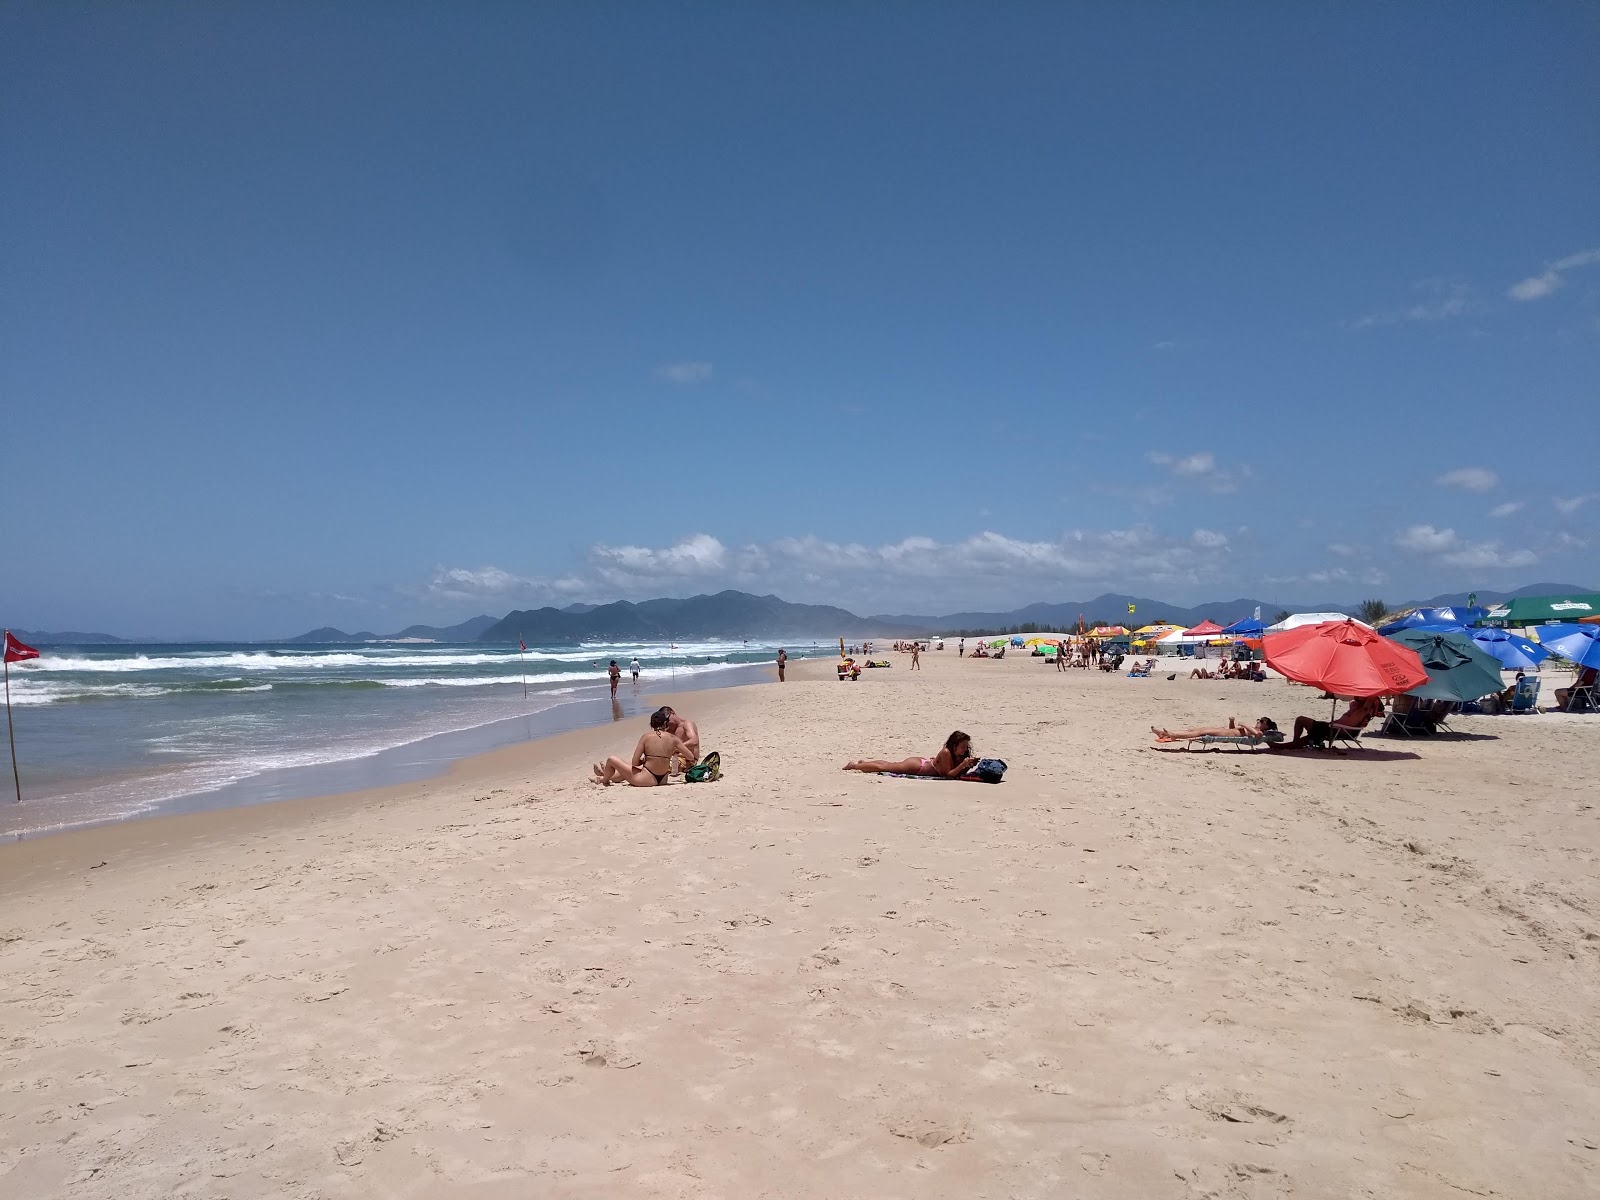 Praia da Guarda'in fotoğrafı parlak ince kum yüzey ile